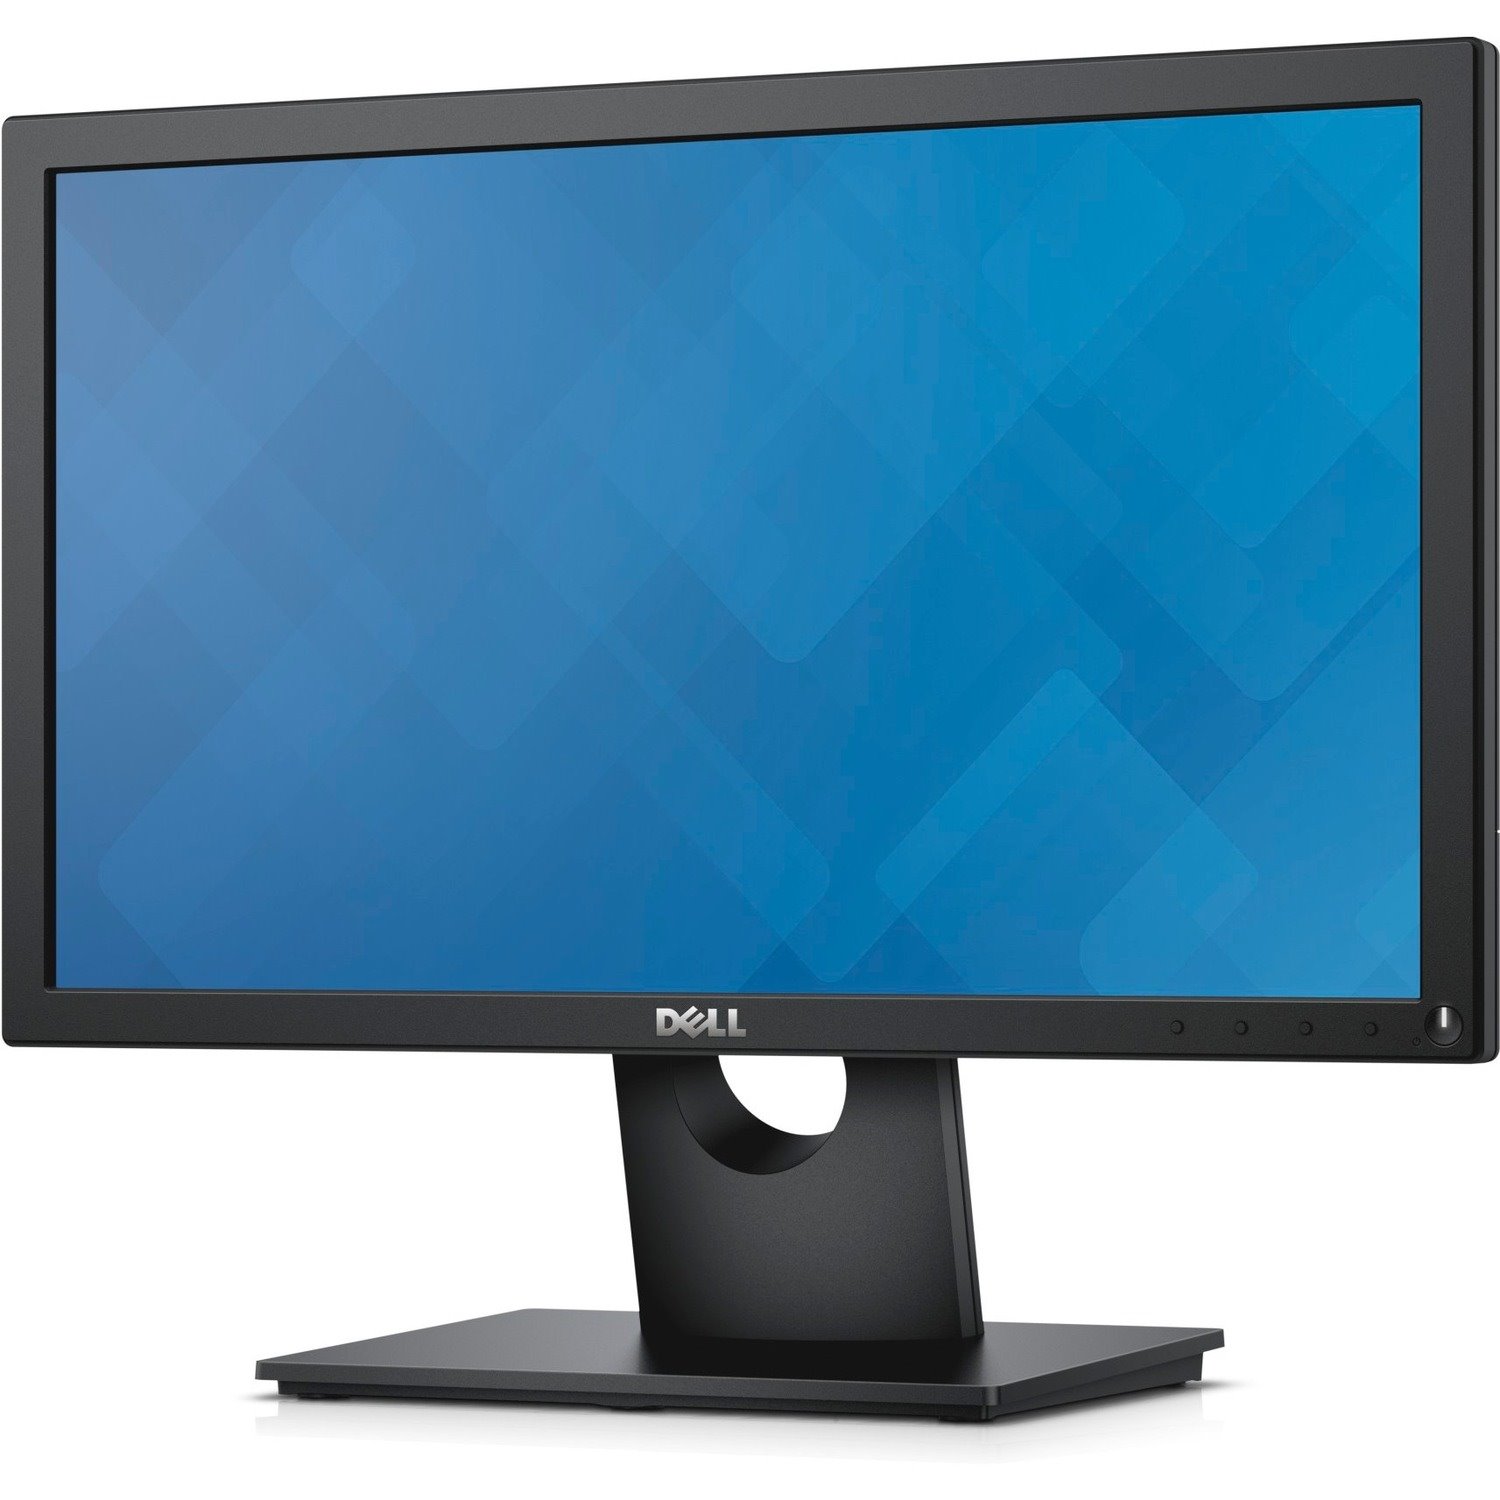 Dell E1916HV 18.5" WXGA LED LCD Monitor - 16:9 - Black